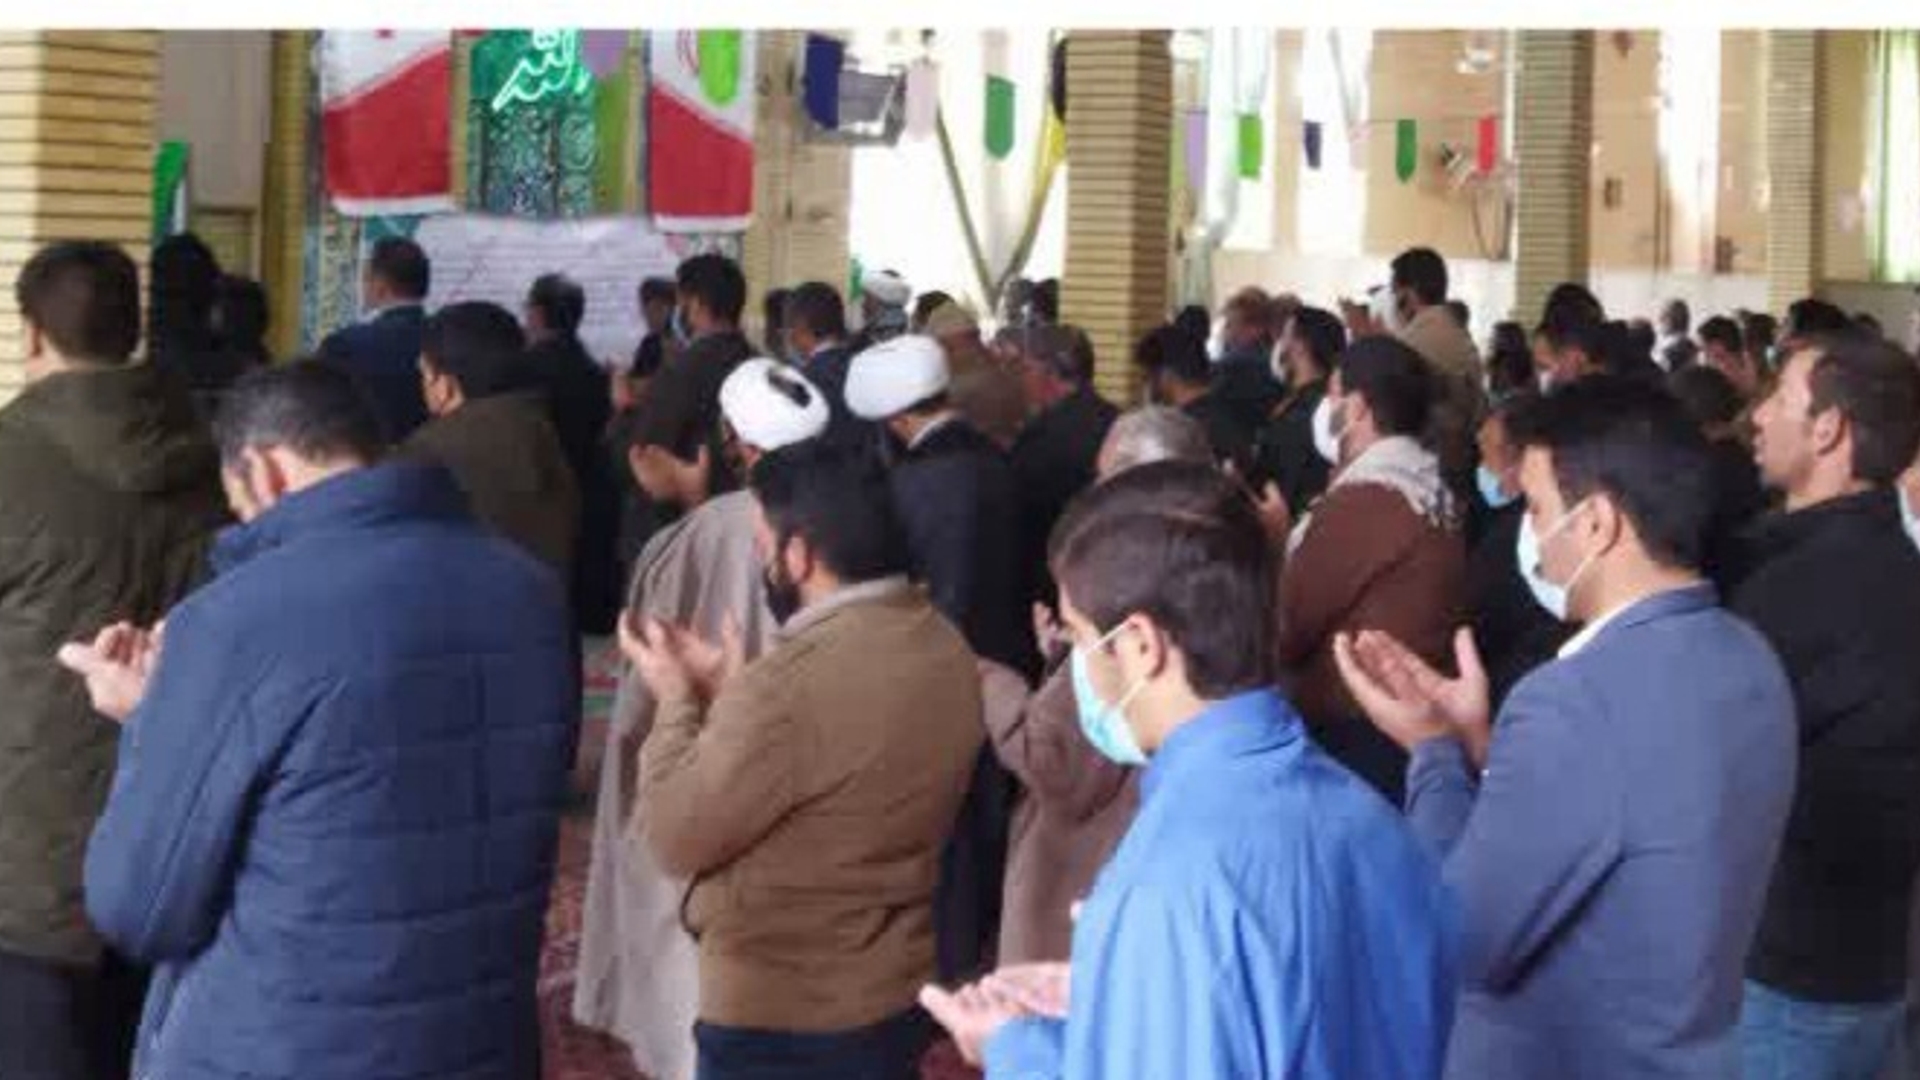 حجت الاسلام غروی امام جمعه شهر داودآباد آخرین نماز جمعه را اقامه کرد و در پایان مراسم مسئولین ونماز گزاران از زحمات ایشان قدردانی کردند